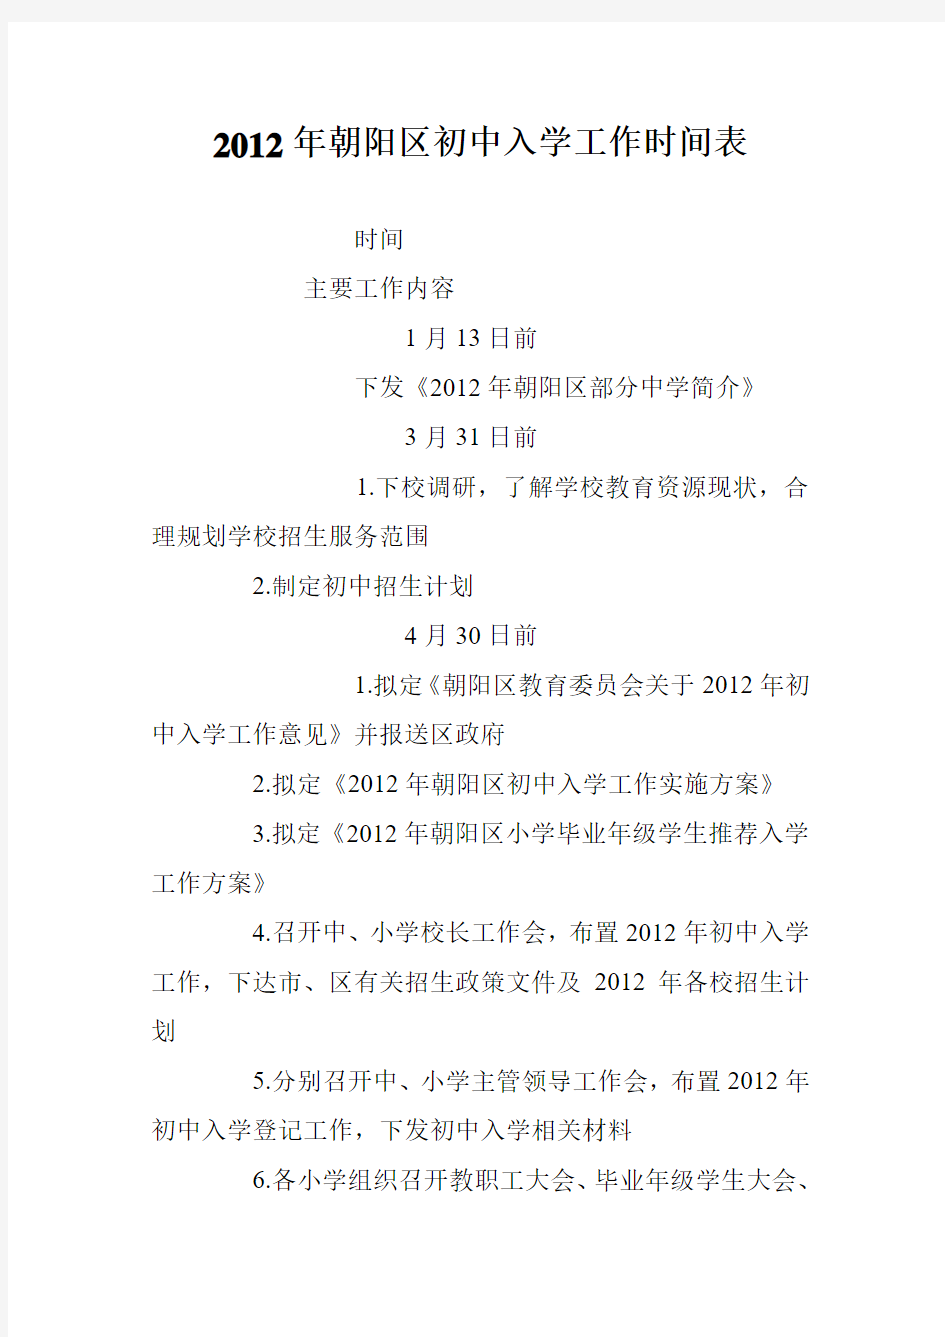 2012年朝阳区初中入学工作时间表